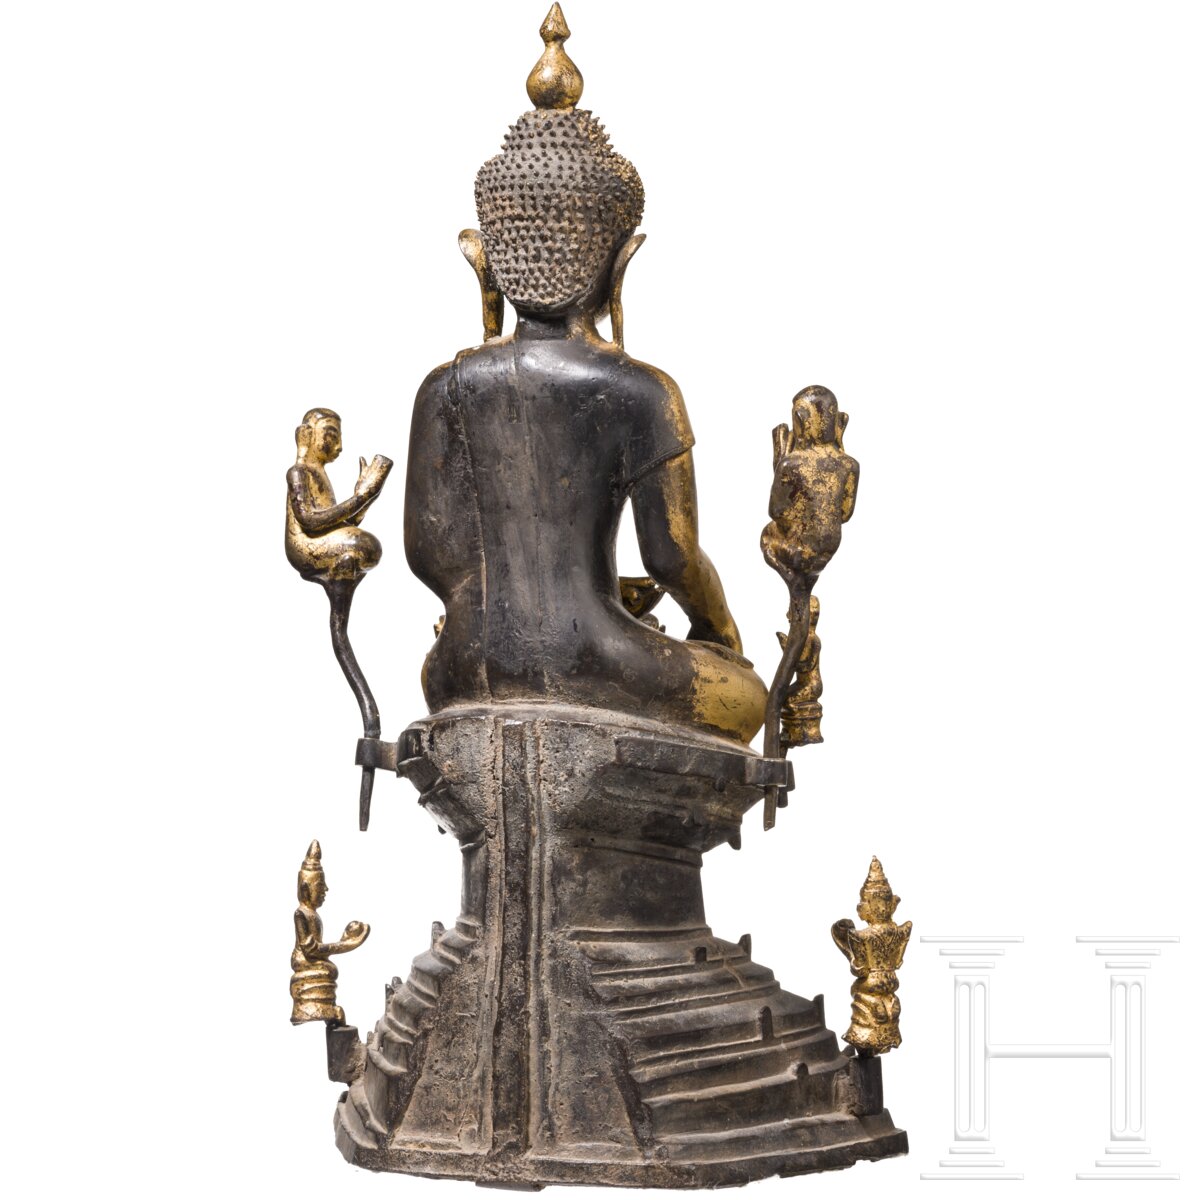 Lackierte und vergoldete Buddhafigur, Burma, 17./18. Jhdt. - Image 4 of 7